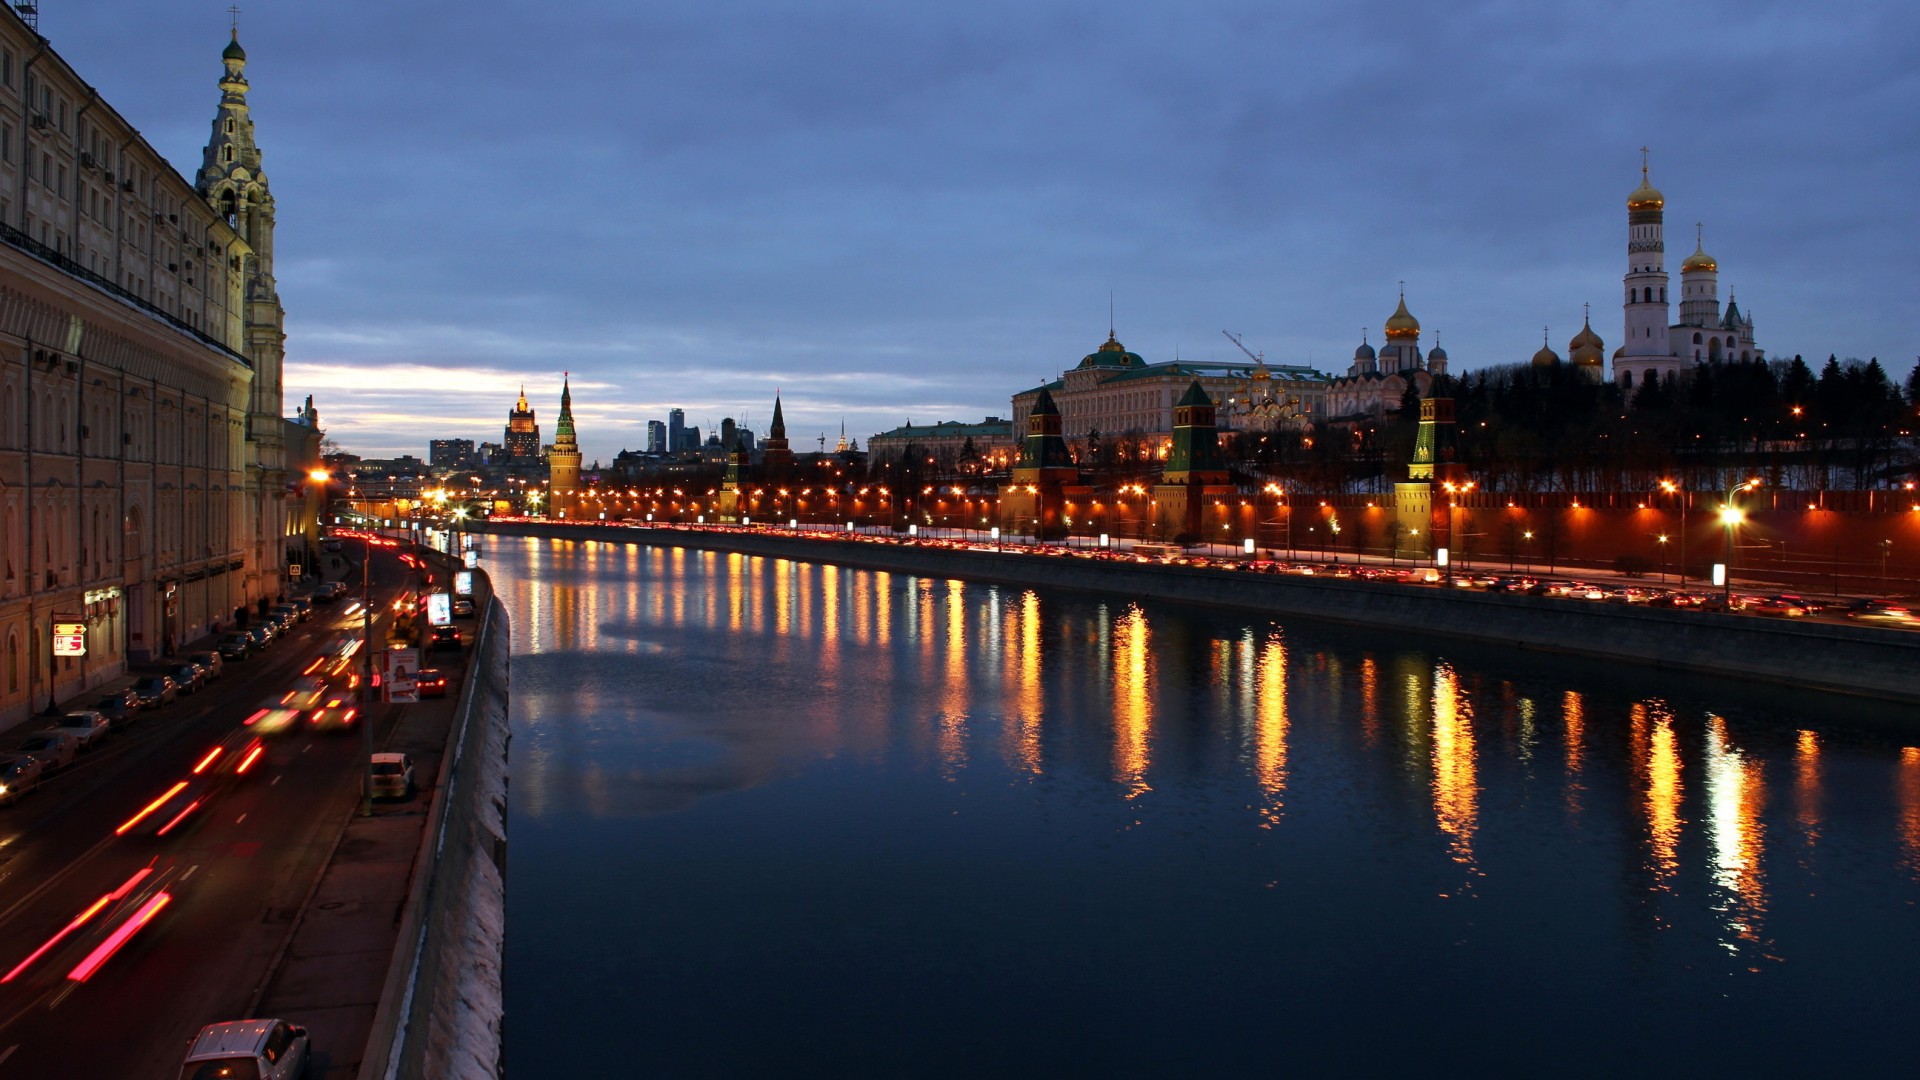 莫斯科,城市,夜晚,灯,河,风景桌面壁纸